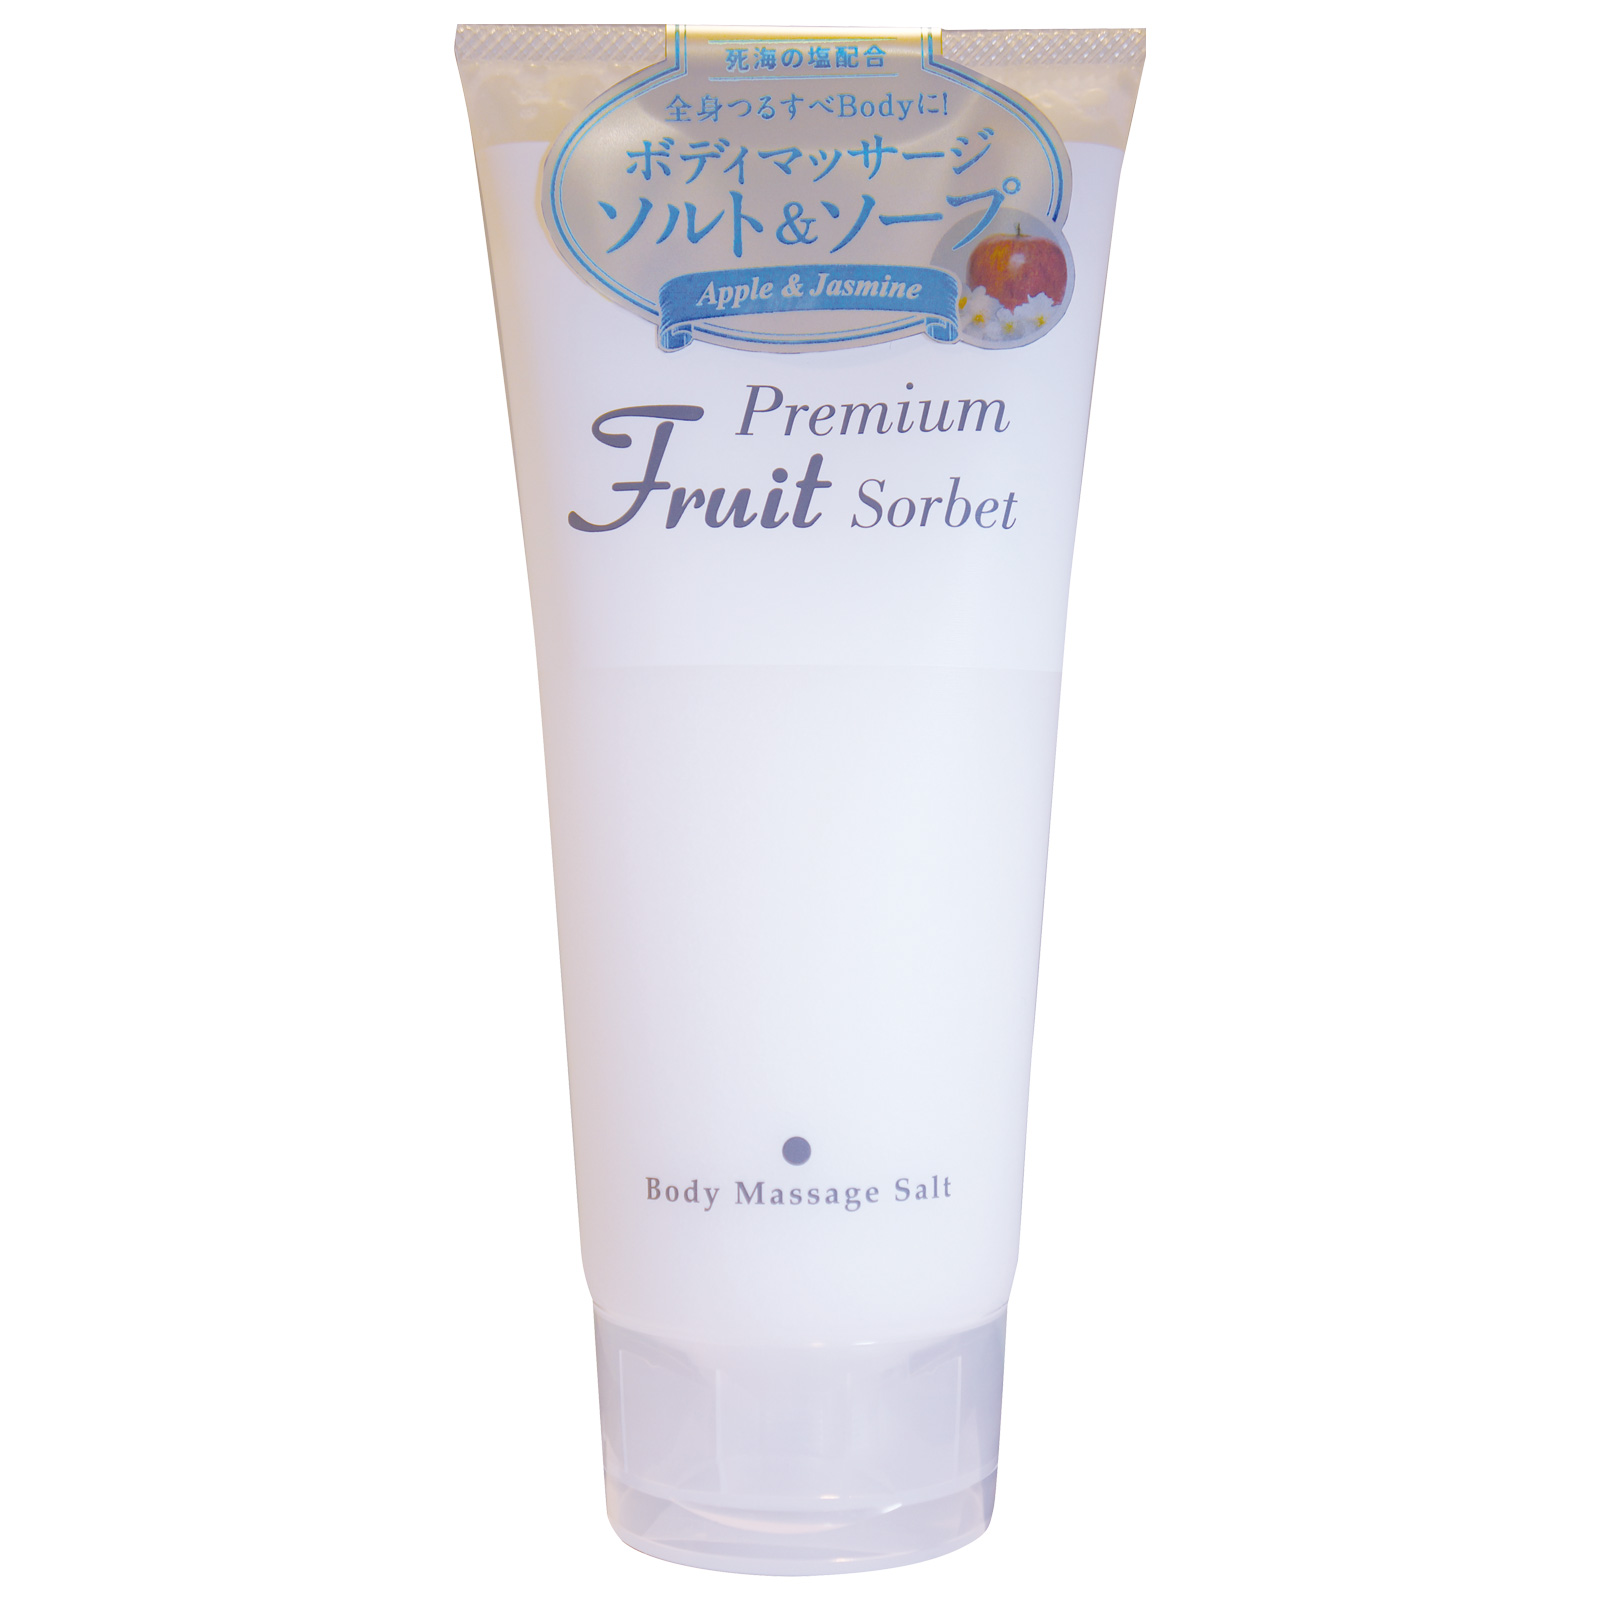 Cosmepro Premium Fruit Sorbet Body Massage Salt Apple&Jasmine. Премиальный фруктовый скраб-сорбет для тела на основе соли «Яблоко и жасмин» Космепро, 500 г